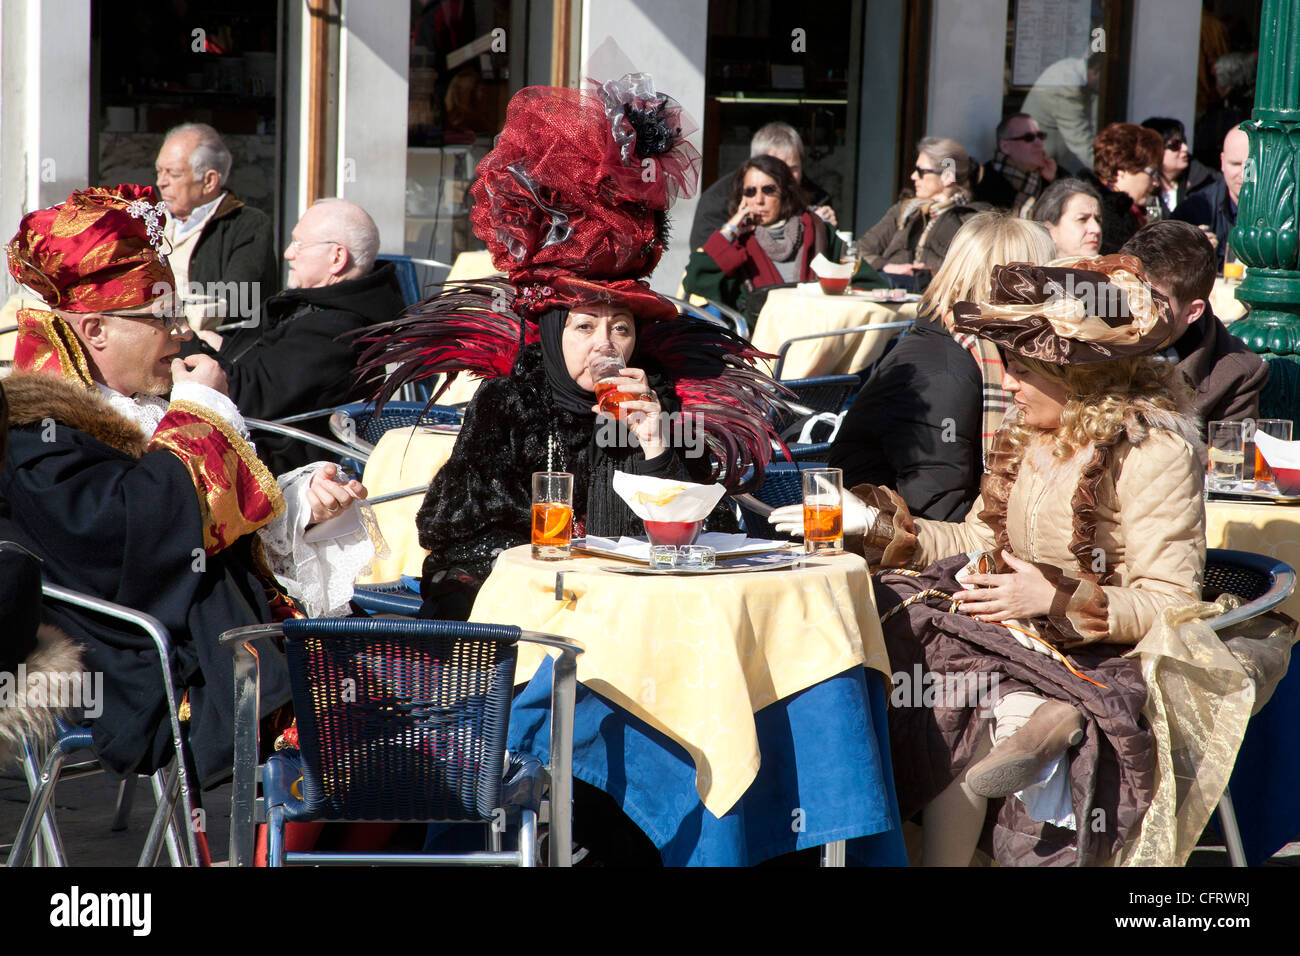 Trois personnes habillées en costume de carnaval assis à une table de la chaussée dans un café à Venise Italie Banque D'Images